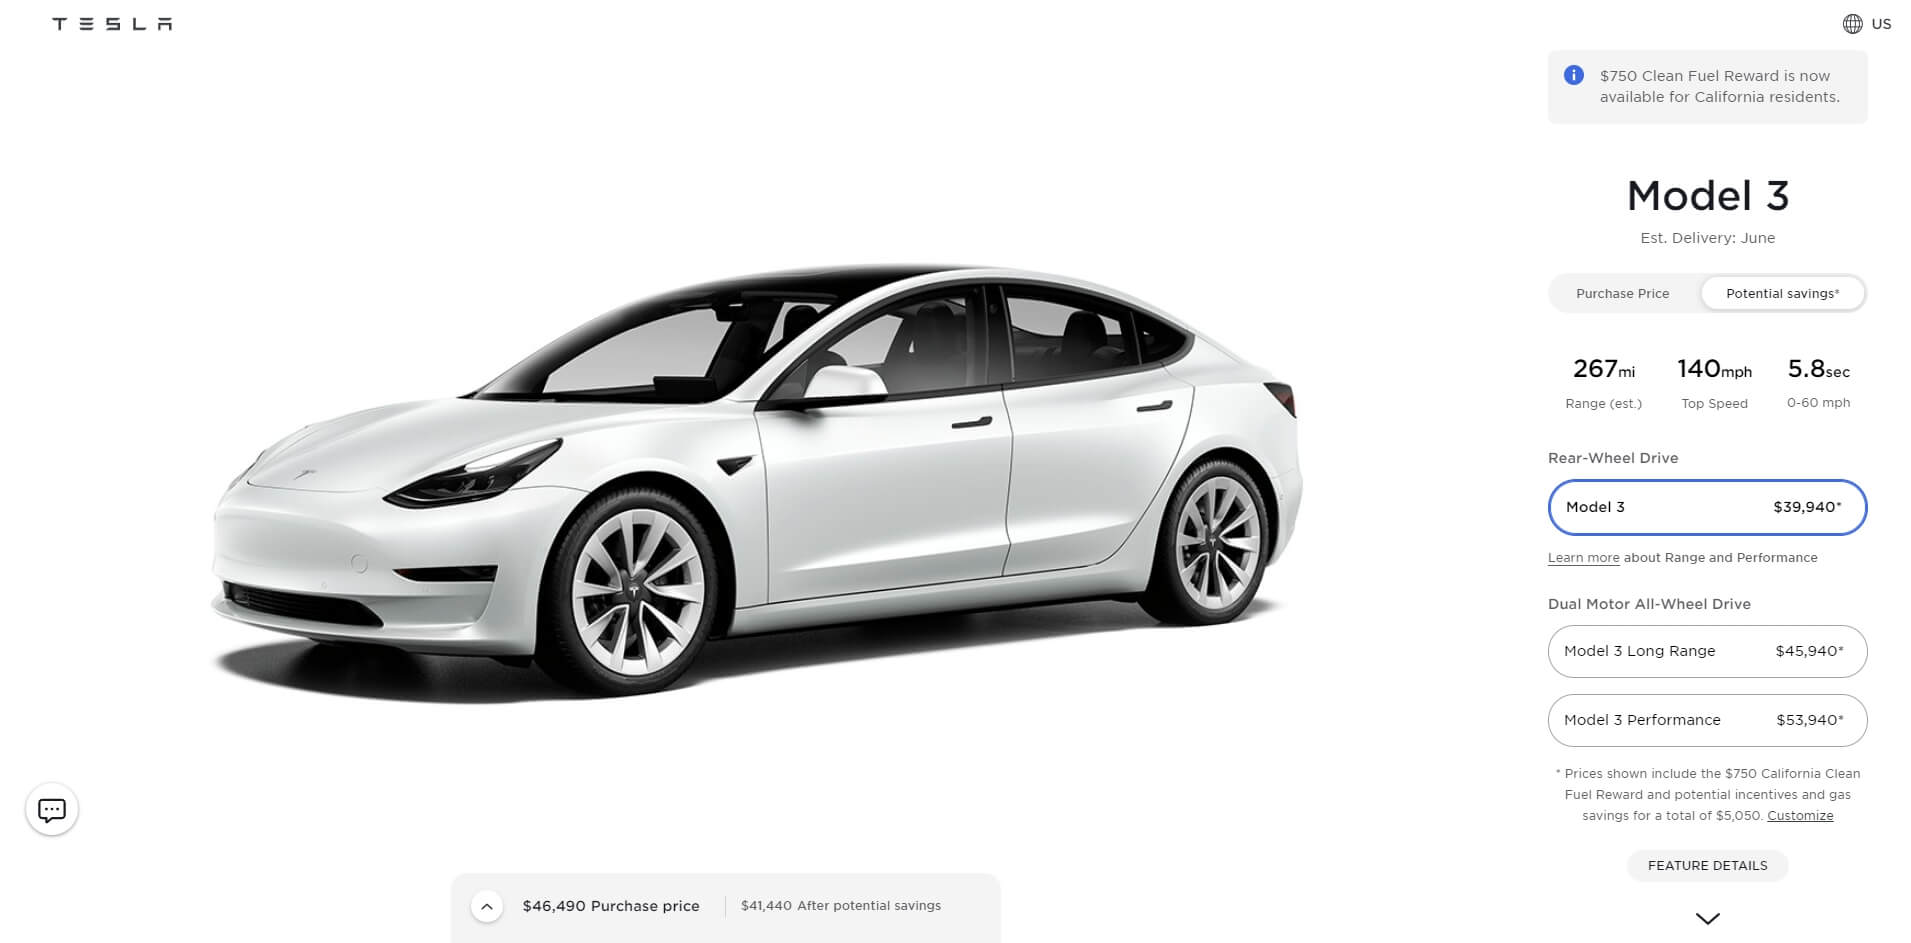 Tesla Model 3 Standard Range Plus (SR+) теперь называется Tesla Model 3 (RWD)